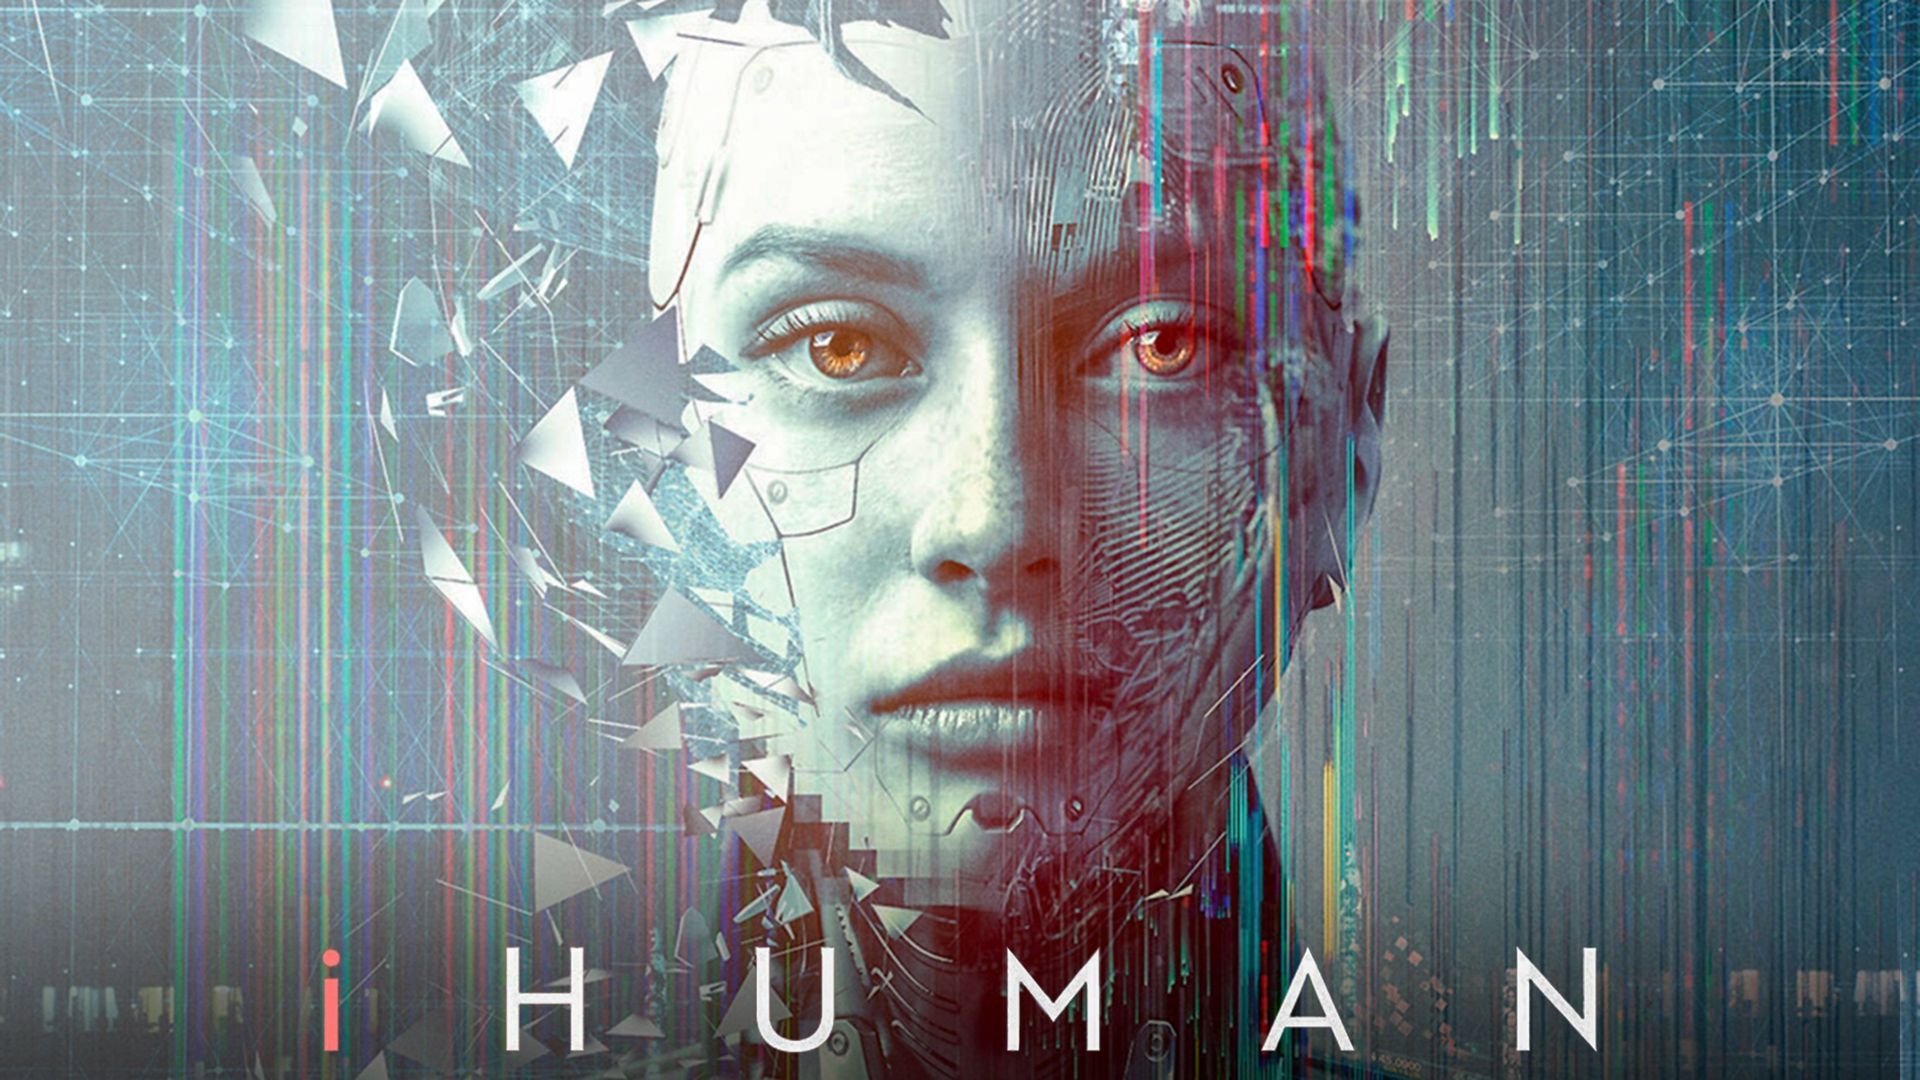 Watch iHuman (2020) Full Movie Free Online - Plex